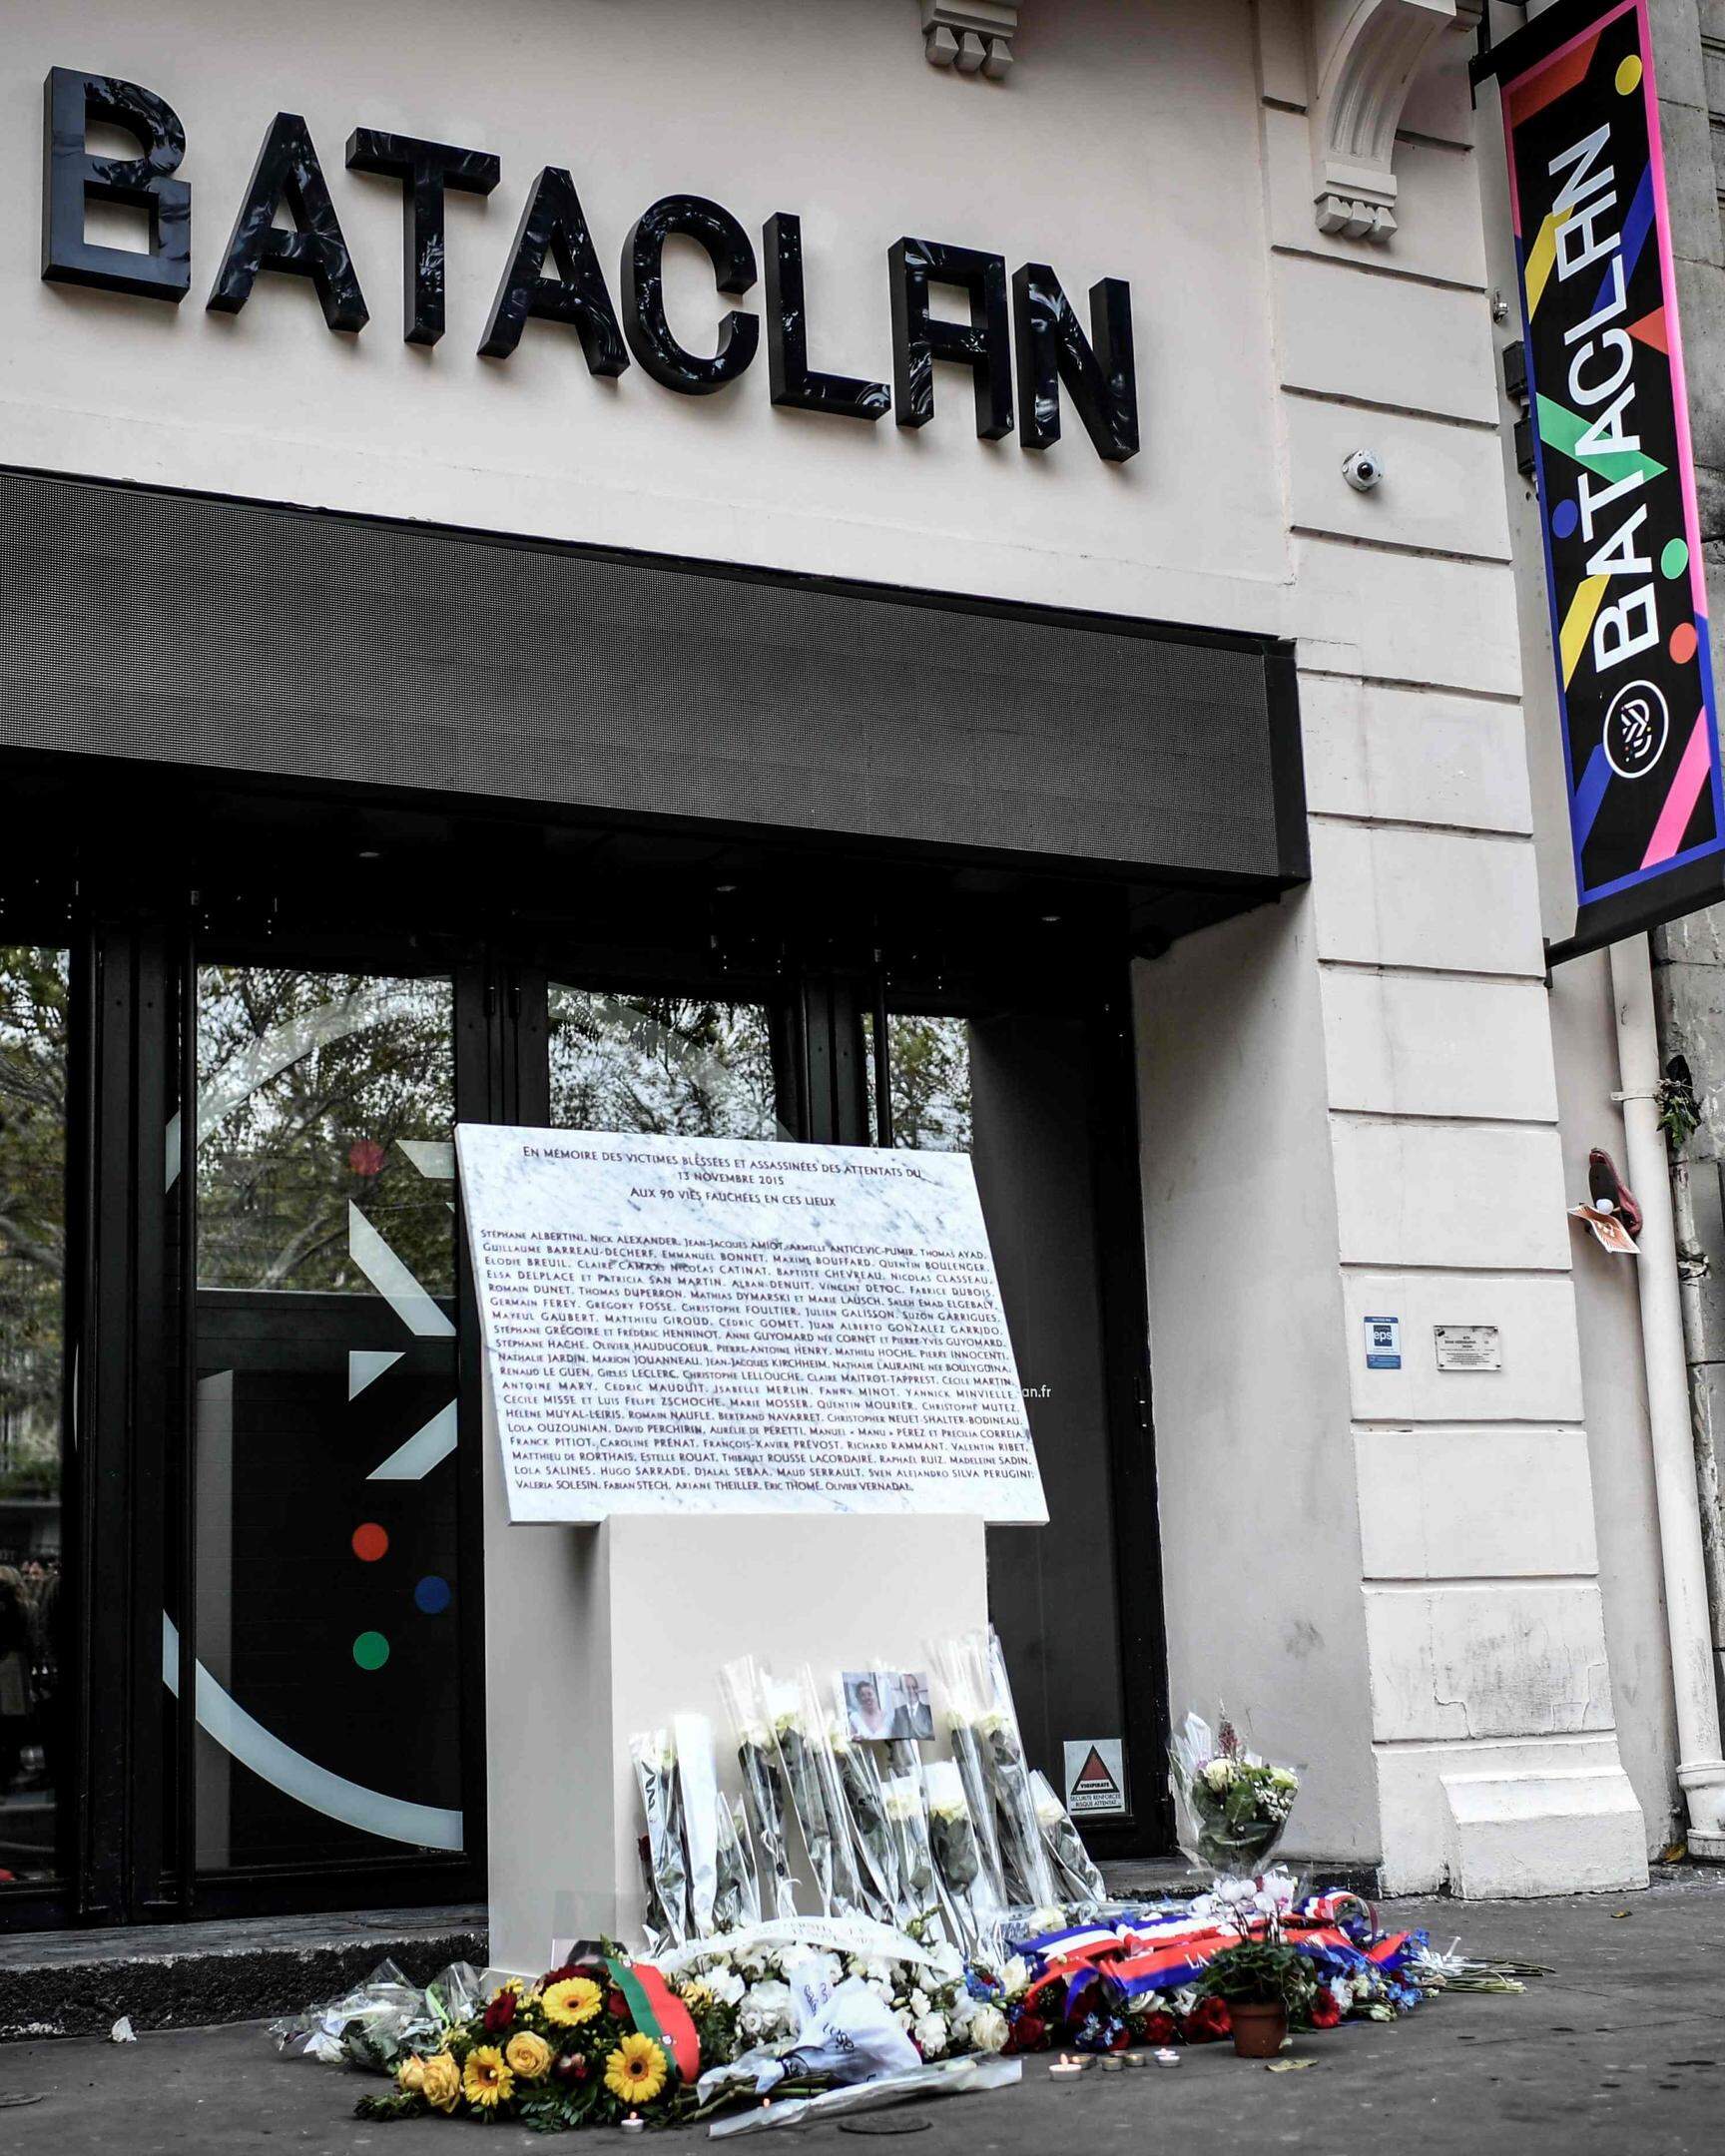 Ein Archivbild vom Bataclan fünf Jahre nach dem Attentat.  Blumen wurden zum 5. Jahrestag der schrecklichen Tat dort niedergelegt.